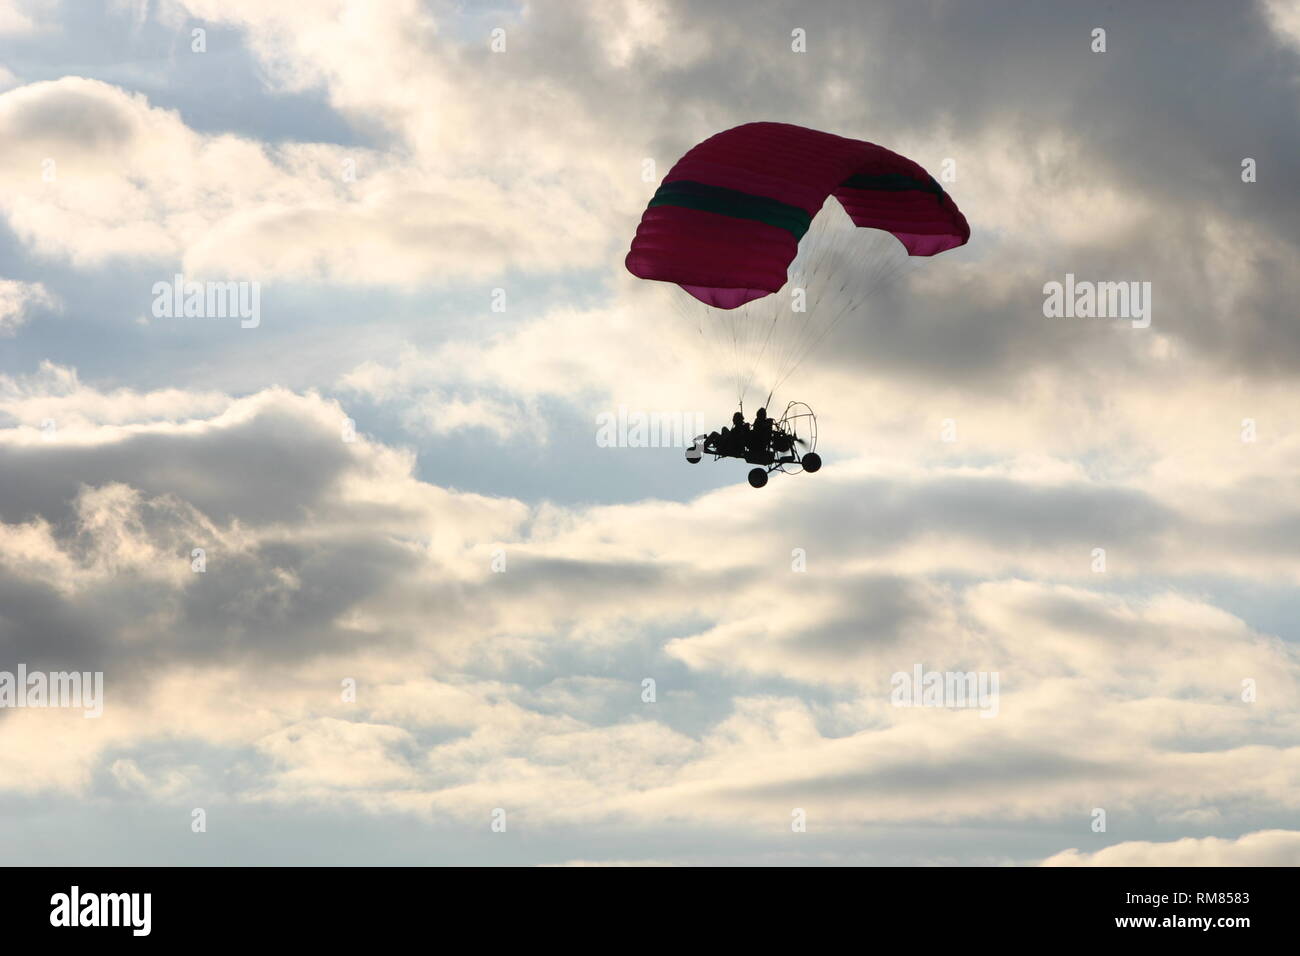 Fliegen Himmel Trike para Motor 3 Stockfoto